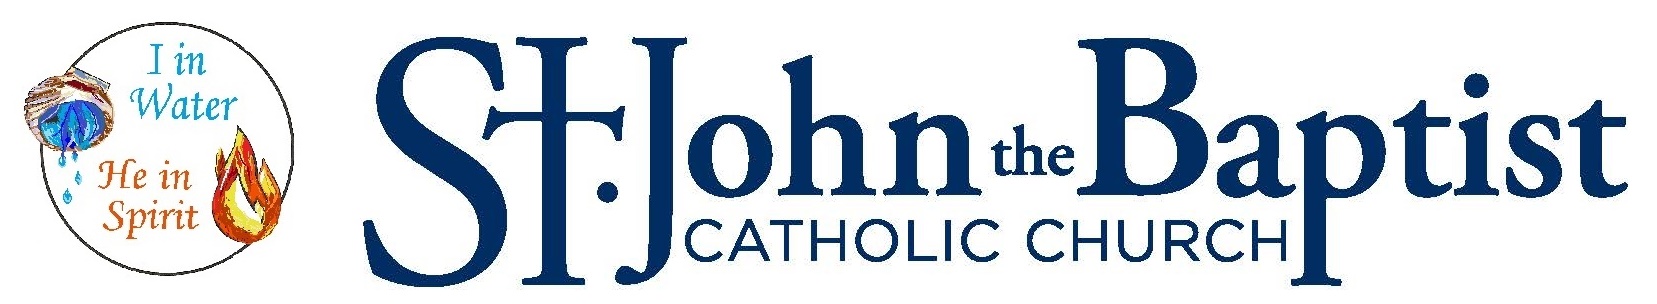 St. John the Baptist Catholic Church